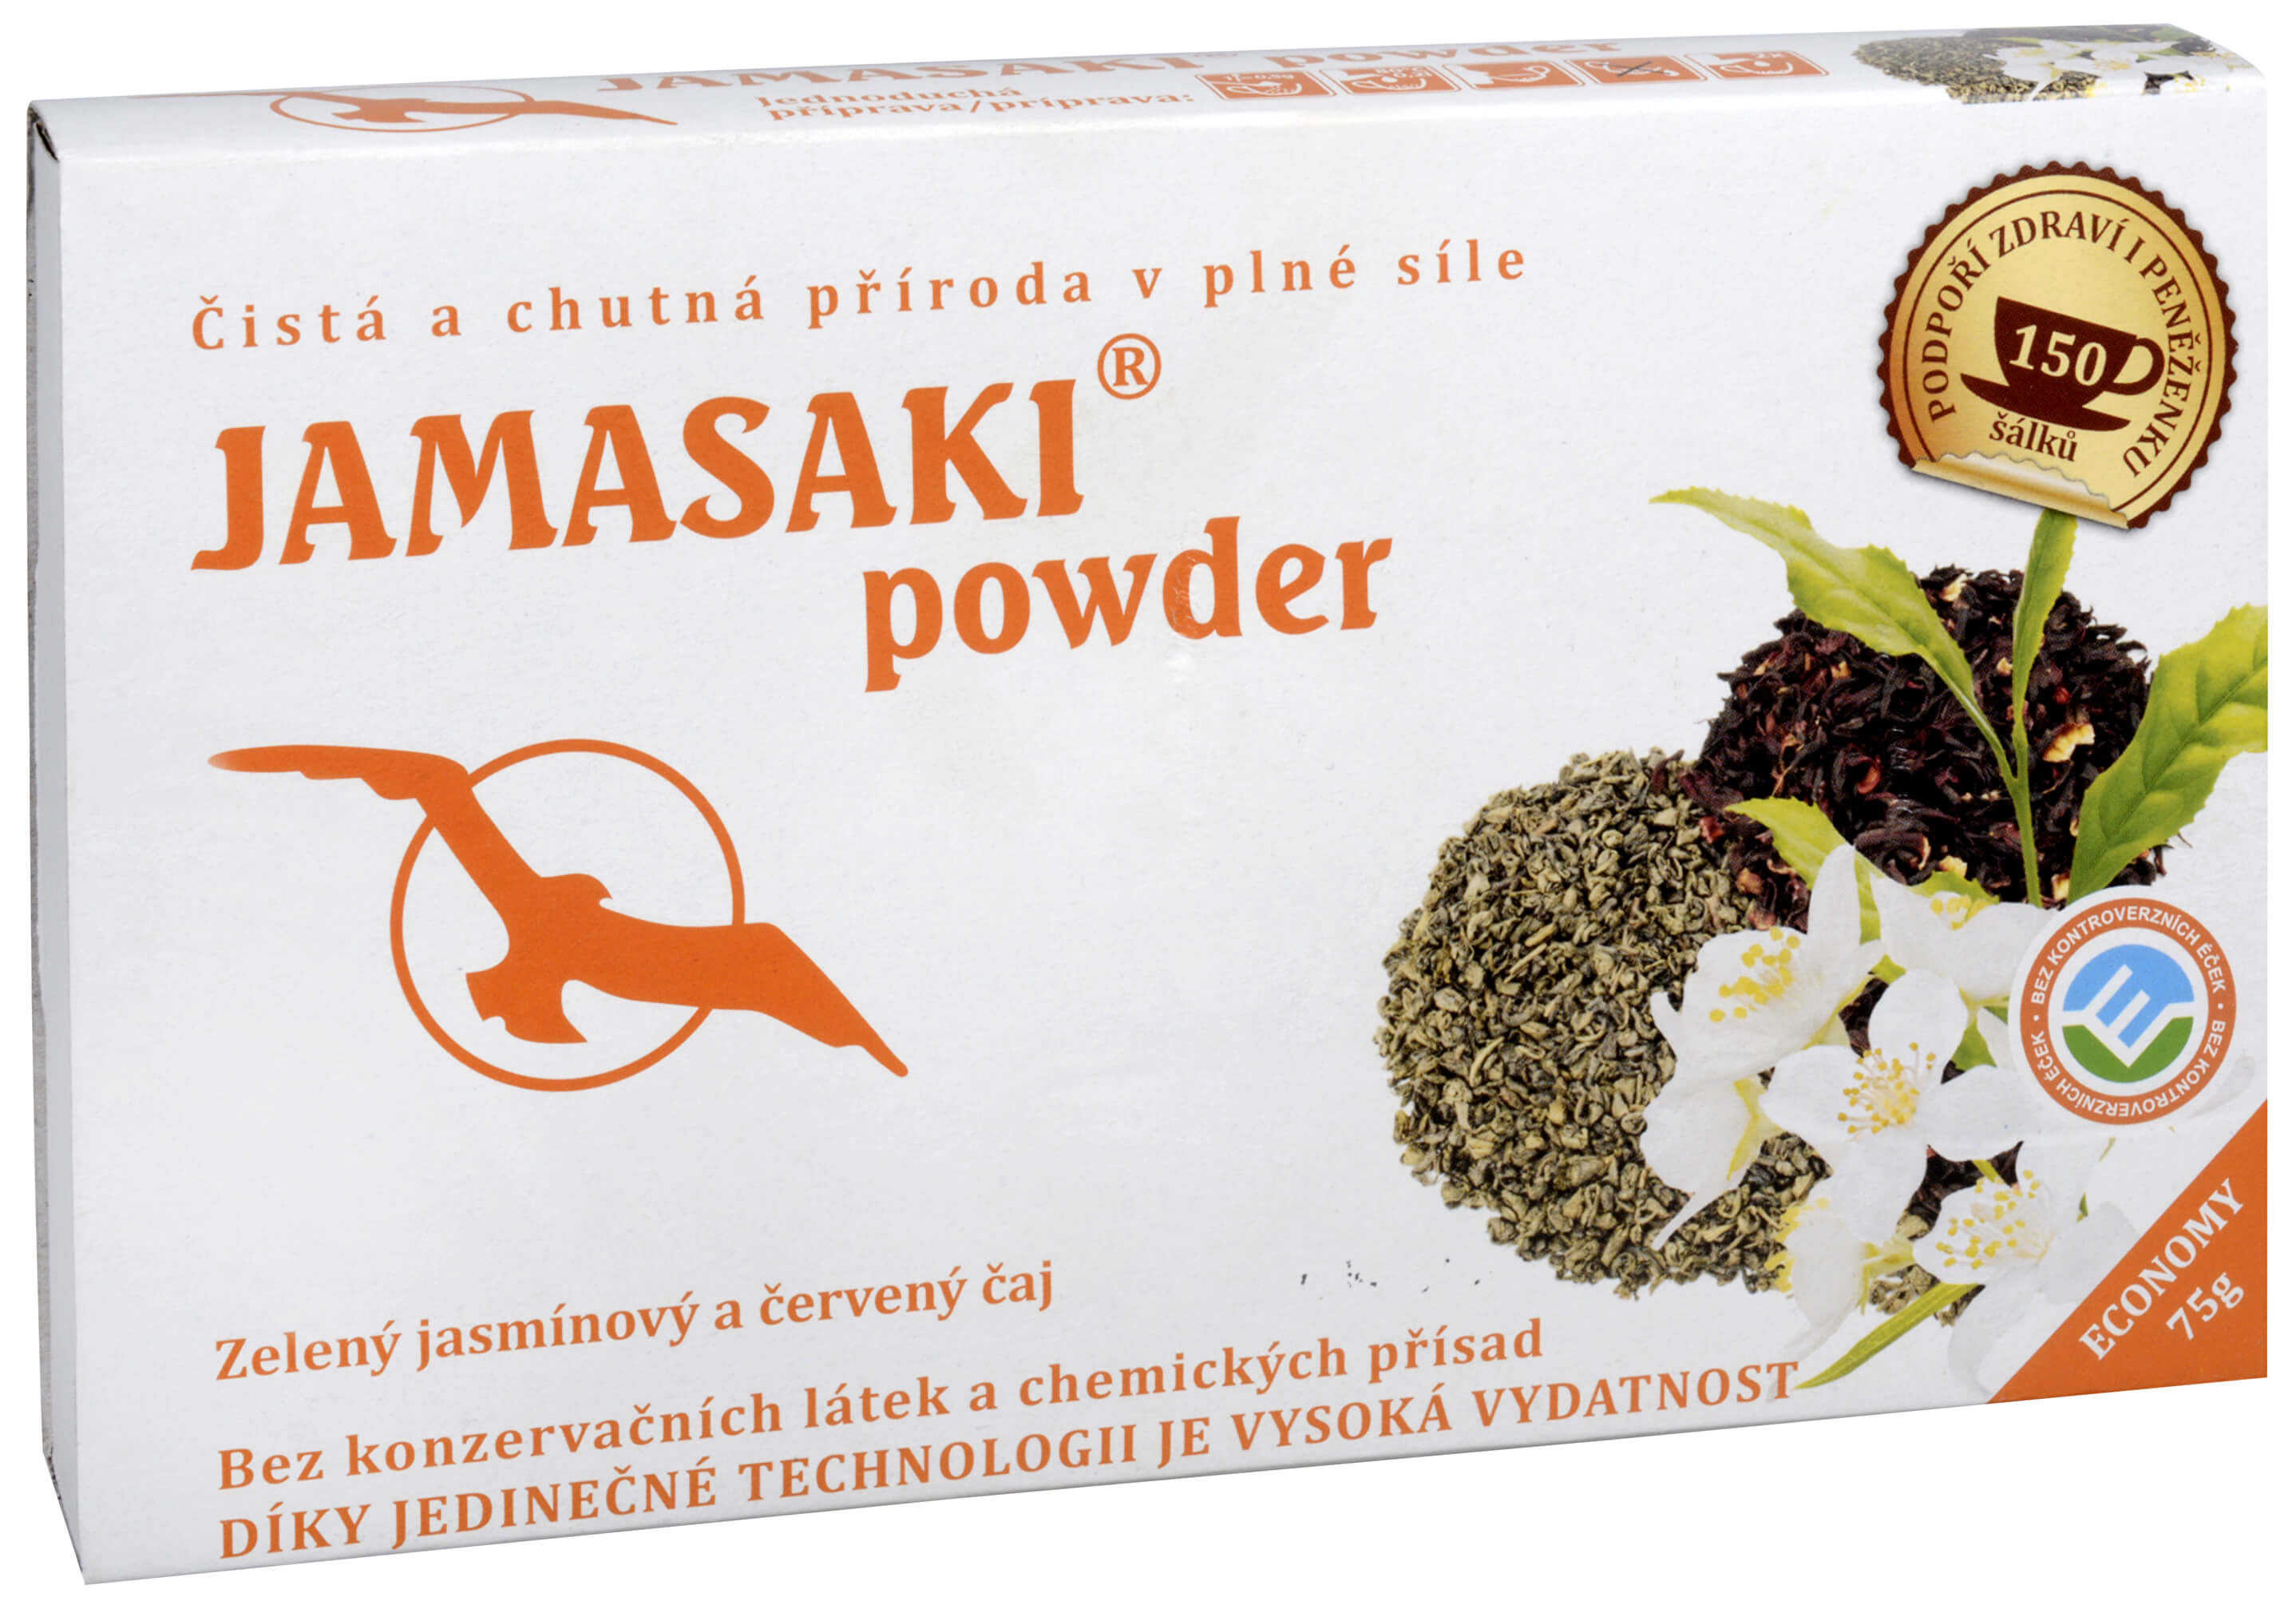 Zobrazit detail výrobku Hannasaki Jamasaki powder - zelený jasmínový a červený čaj 75 g